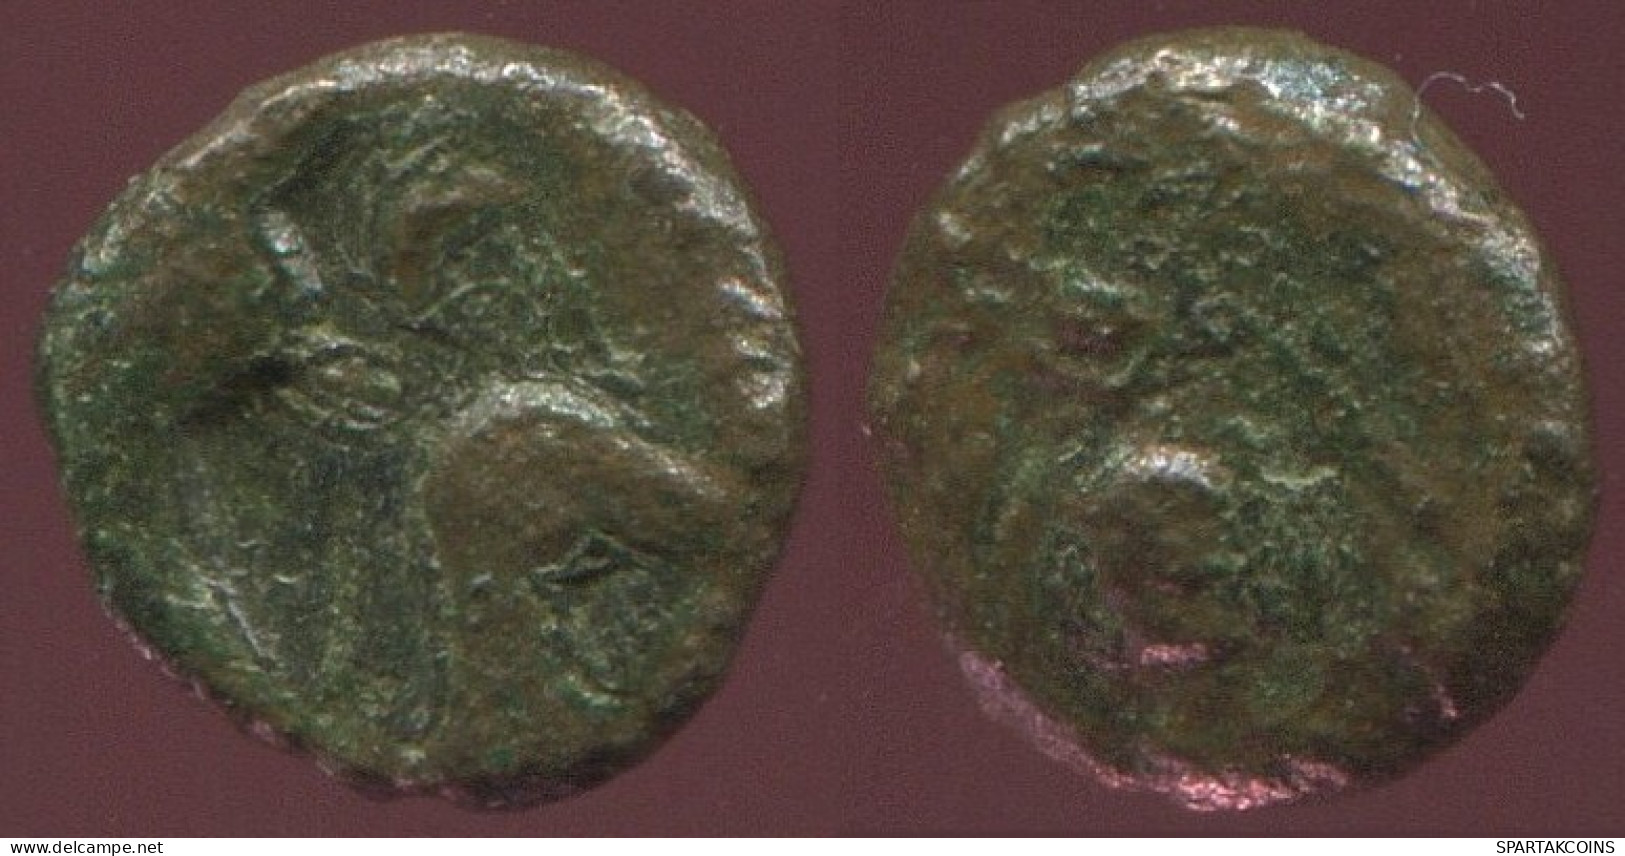 Ancient Authentic Original GREEK Coin 0.4g/7mm #ANT1588.9.U.A - Griechische Münzen